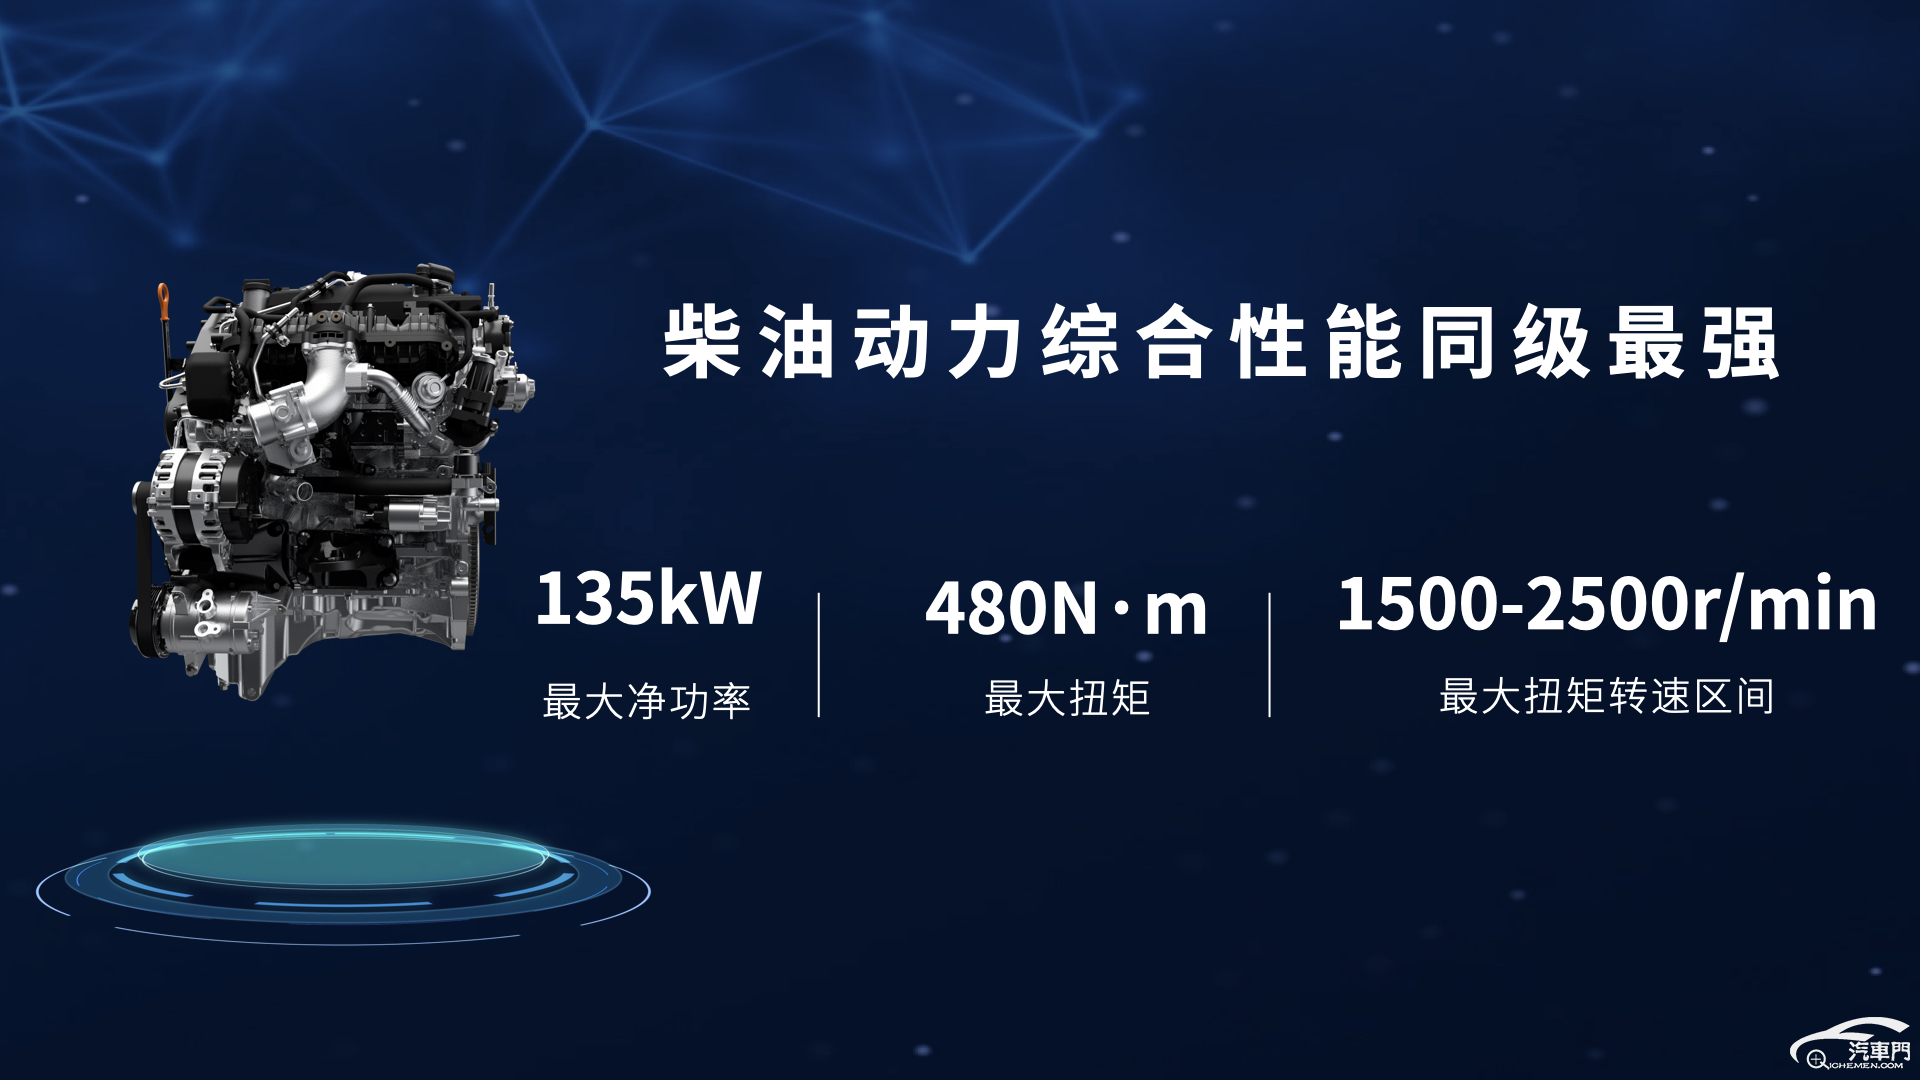 北京车展2.4T长城炮开启预售 山海炮Hi4-T完成首秀